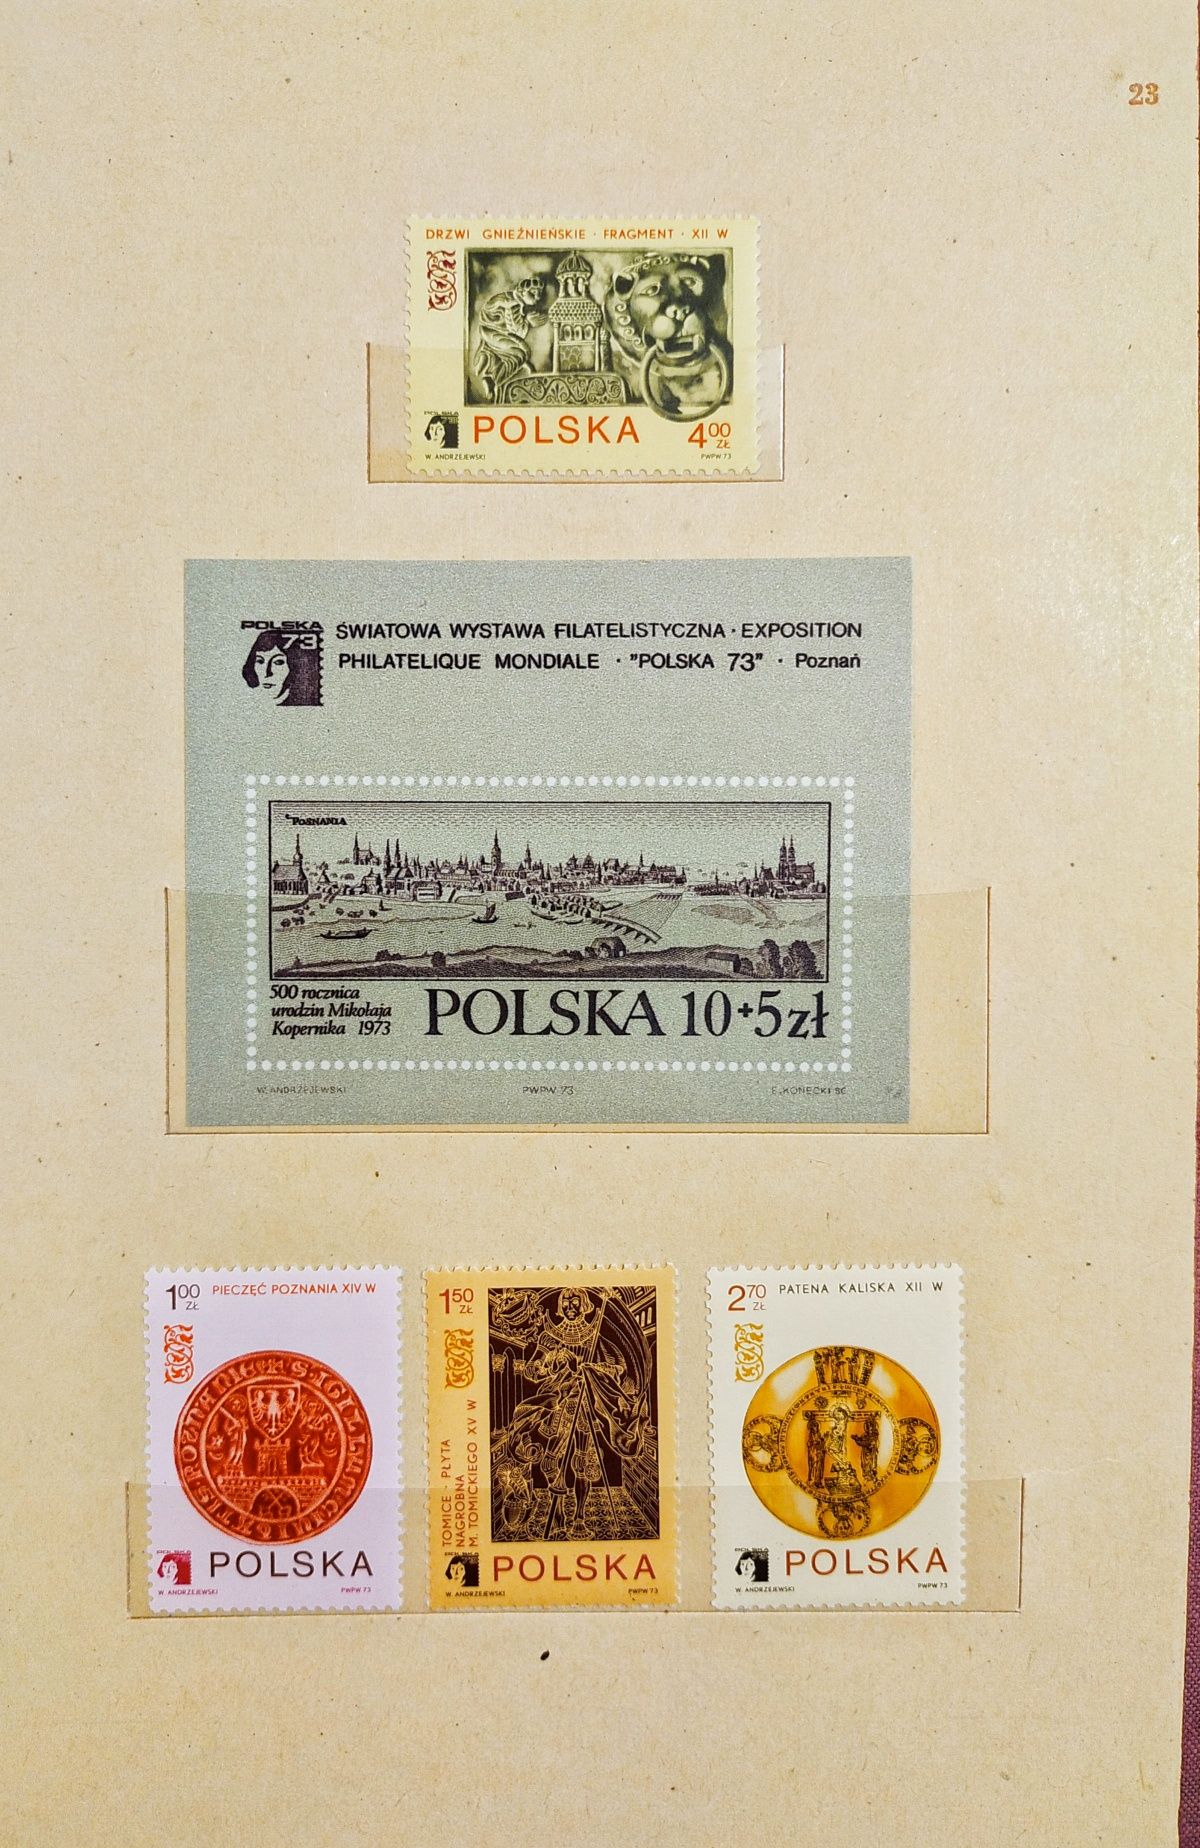 2 Klasery jubileuszowe Polska 72-75 tom X i XI znaczki czyste, komplet